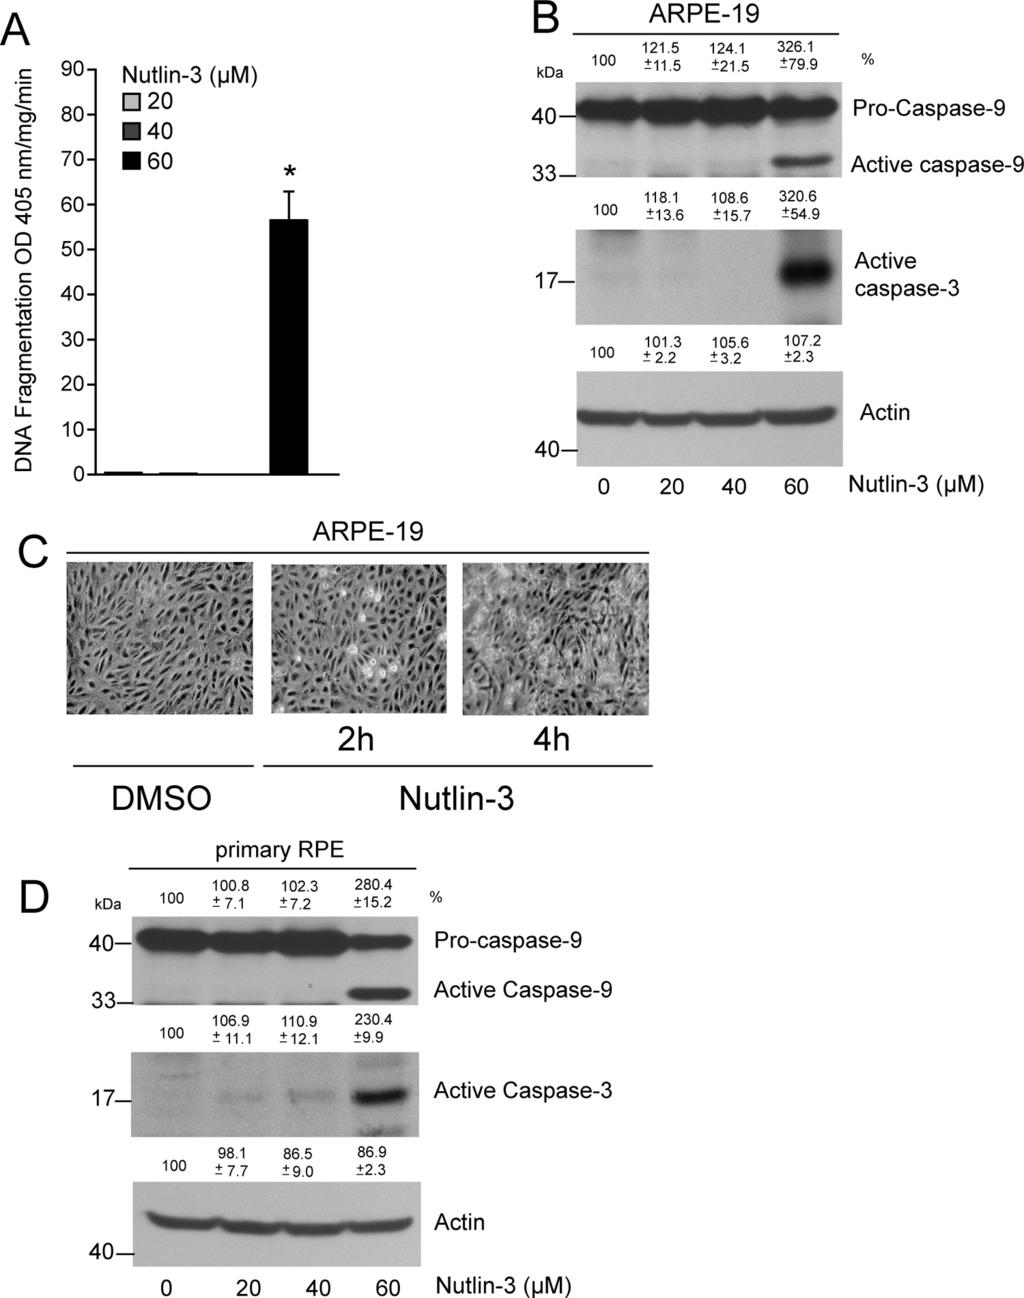 IOVS, May 2011, Vol. 52, No. 6 Nutlin-3 Induces Apoptosis in RPE Cells 3373 FIGURE 4. Nutlin-3 induces apoptosis in ARPE-19 and primary RPE cells.